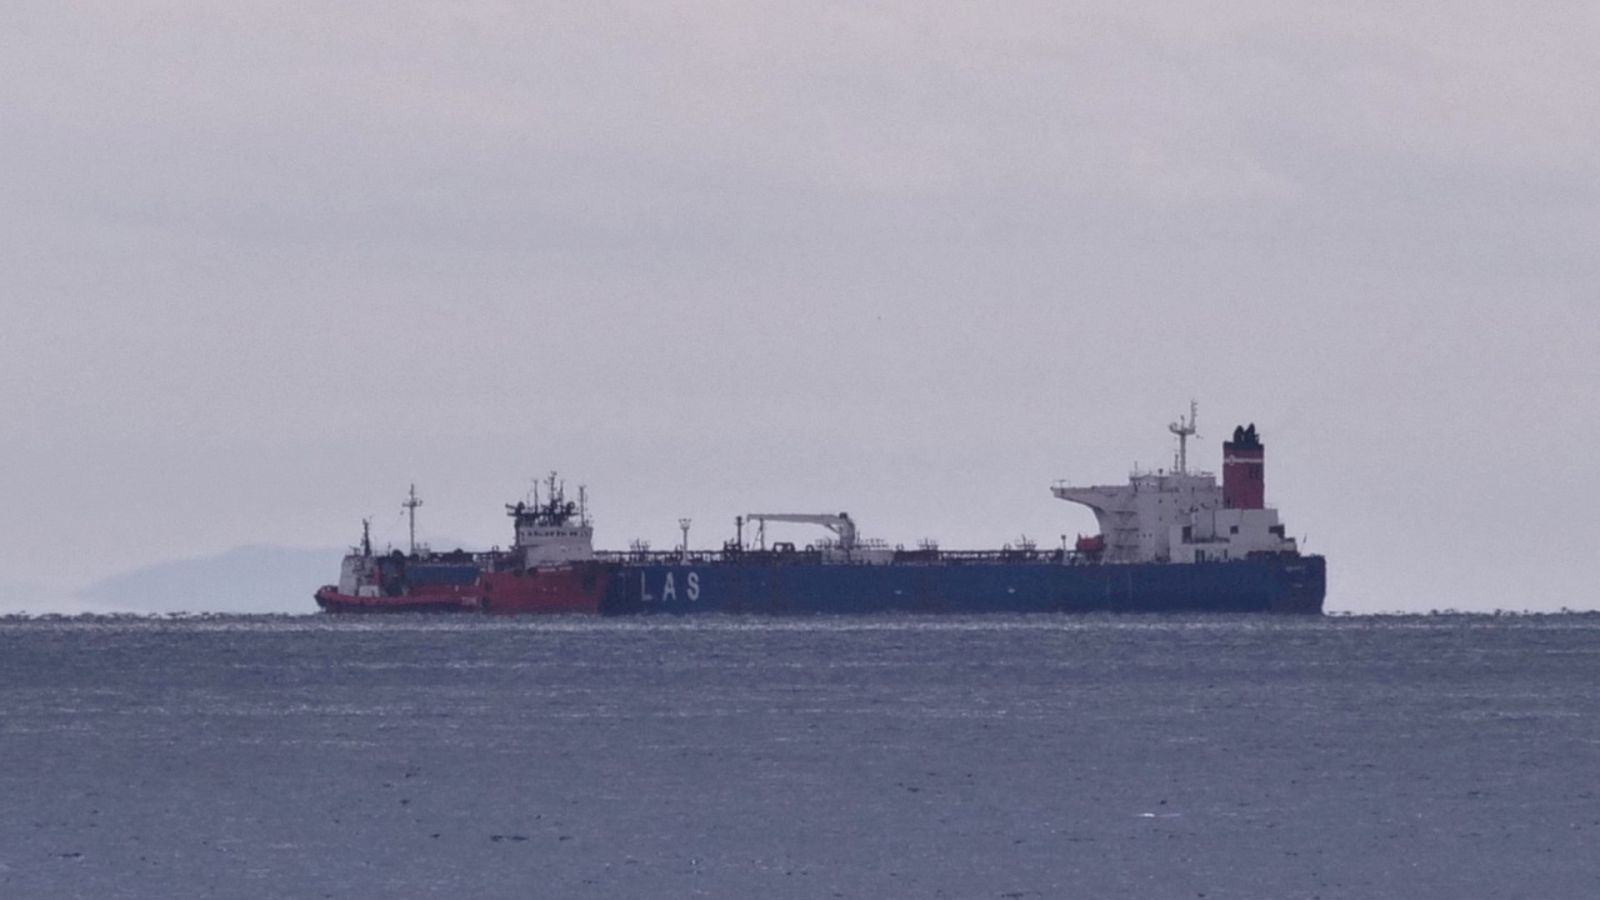 Imagen de archivo de un petrolero anclado frente a la costa de Karystos, en la isla de Evia, Grecia.